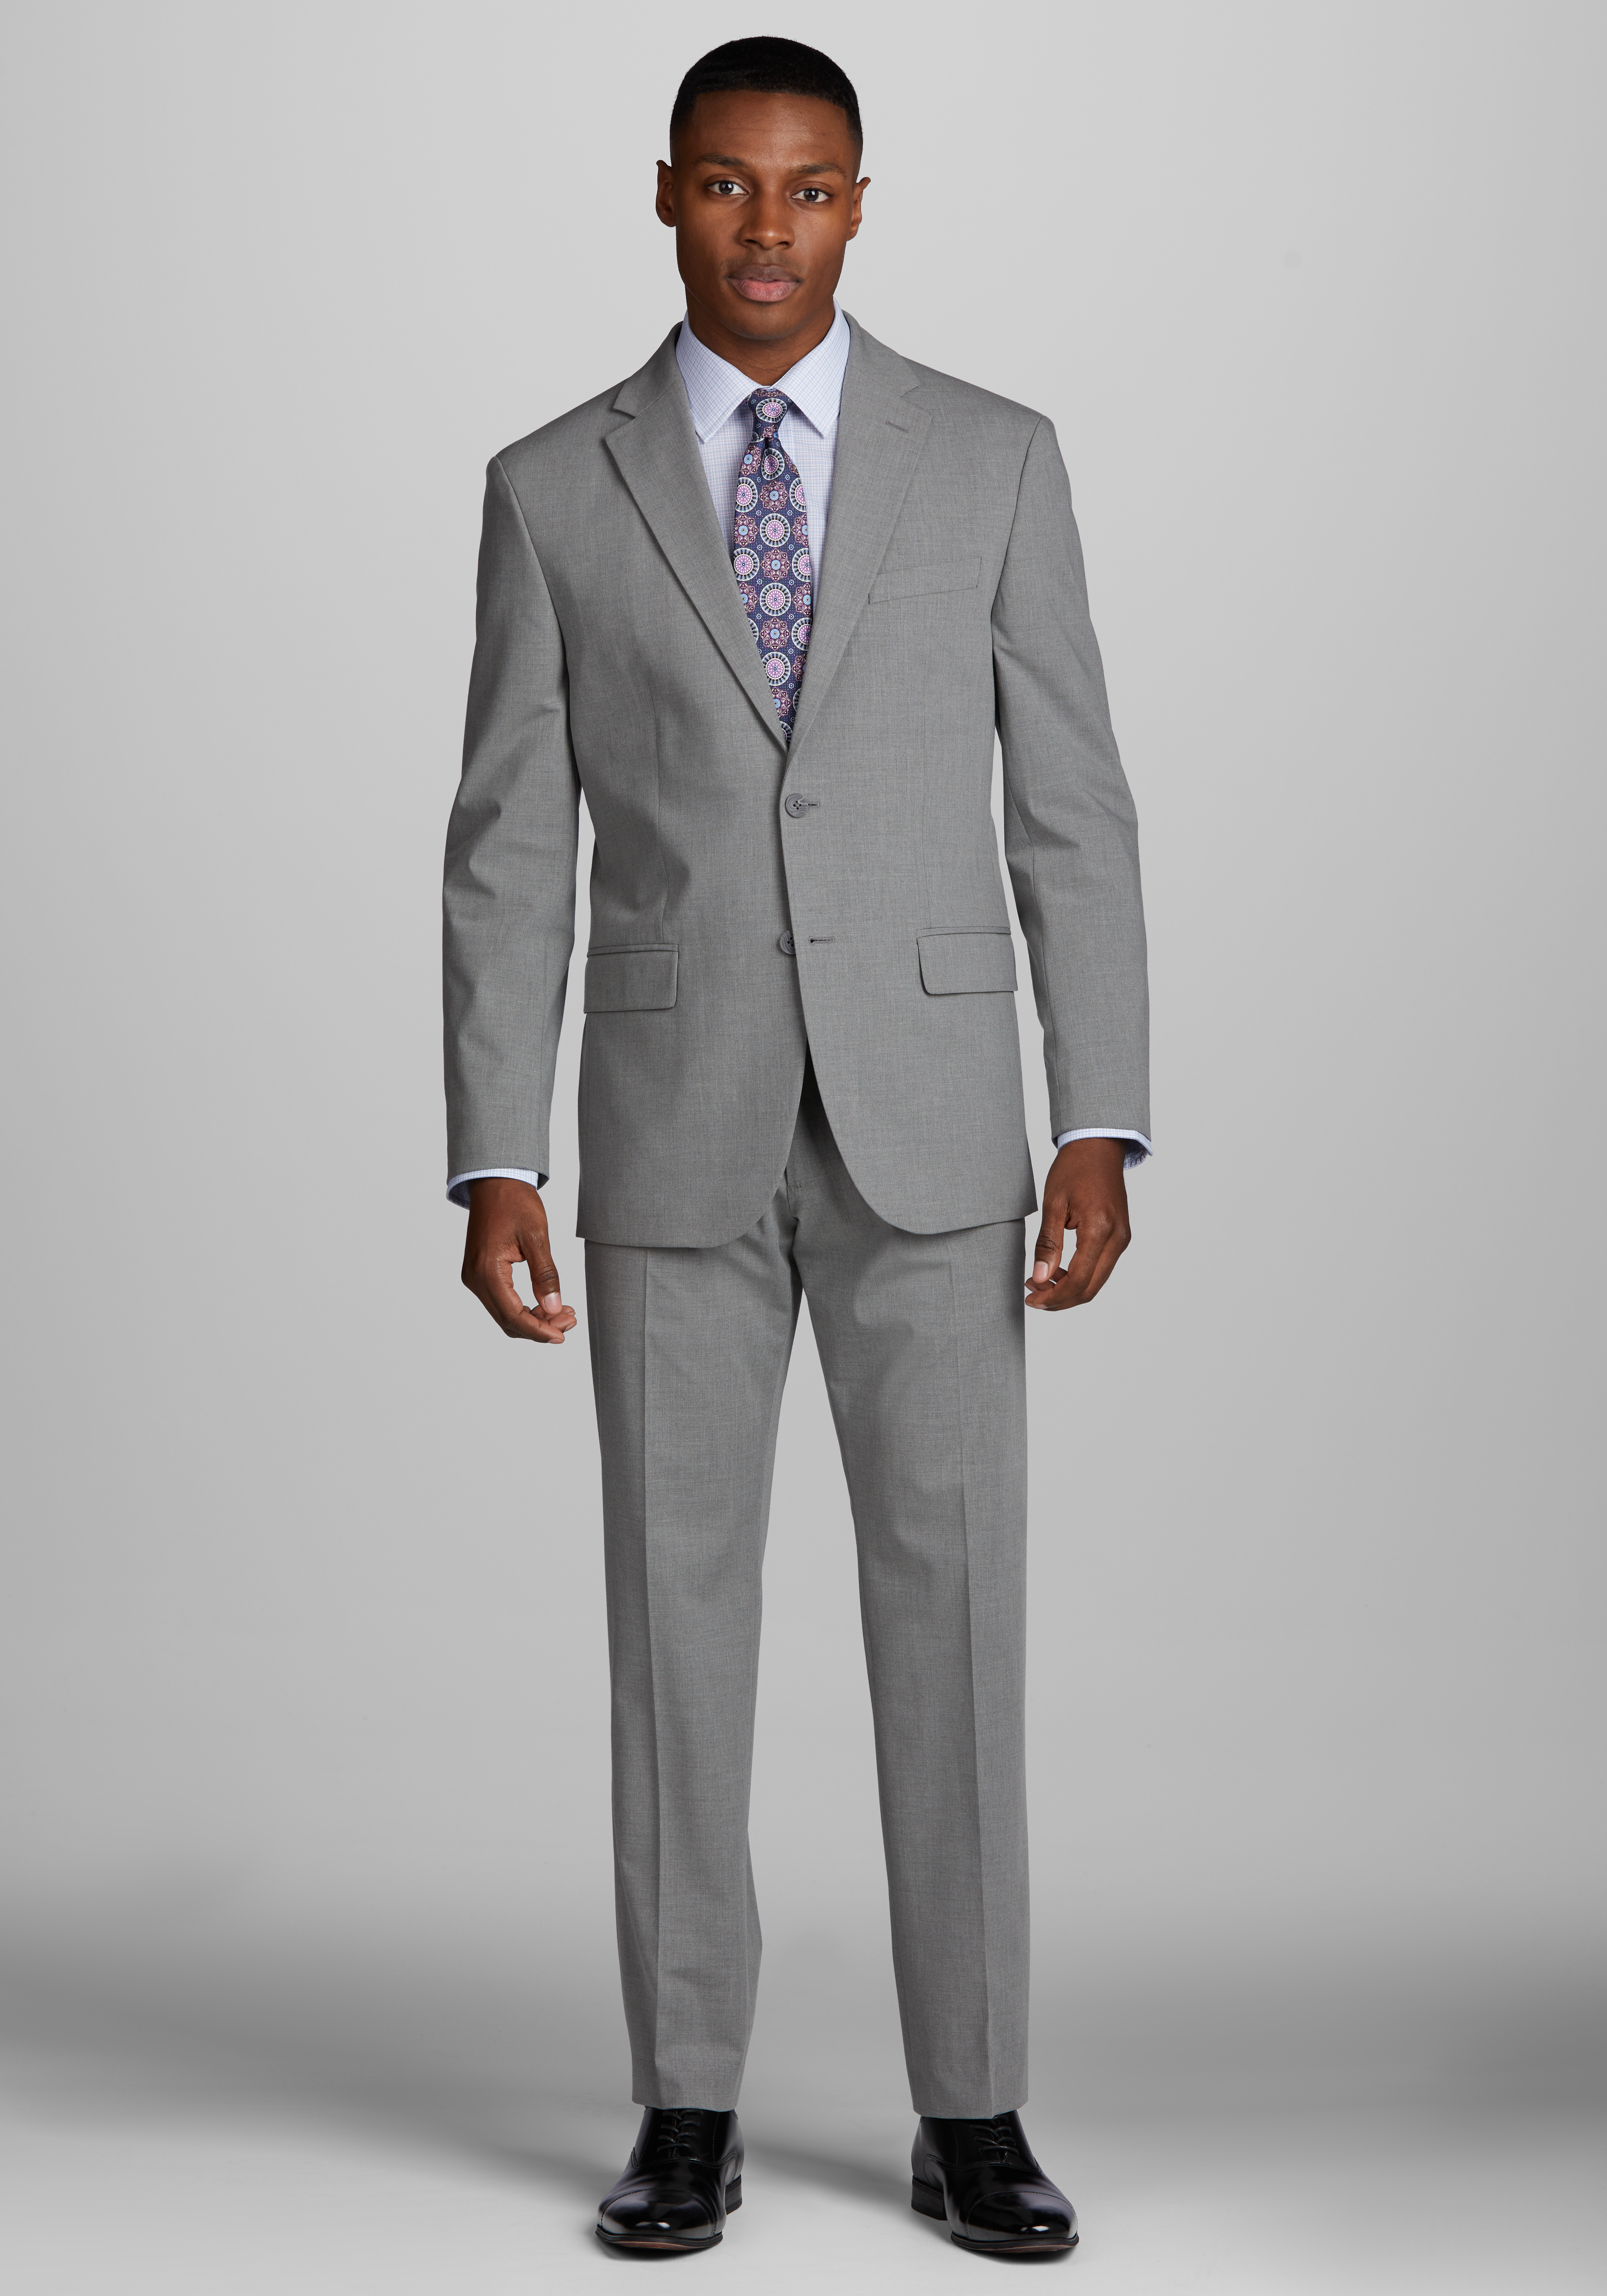 Shop Men's Suits & Clothing on Sale | Jos. A. Bank